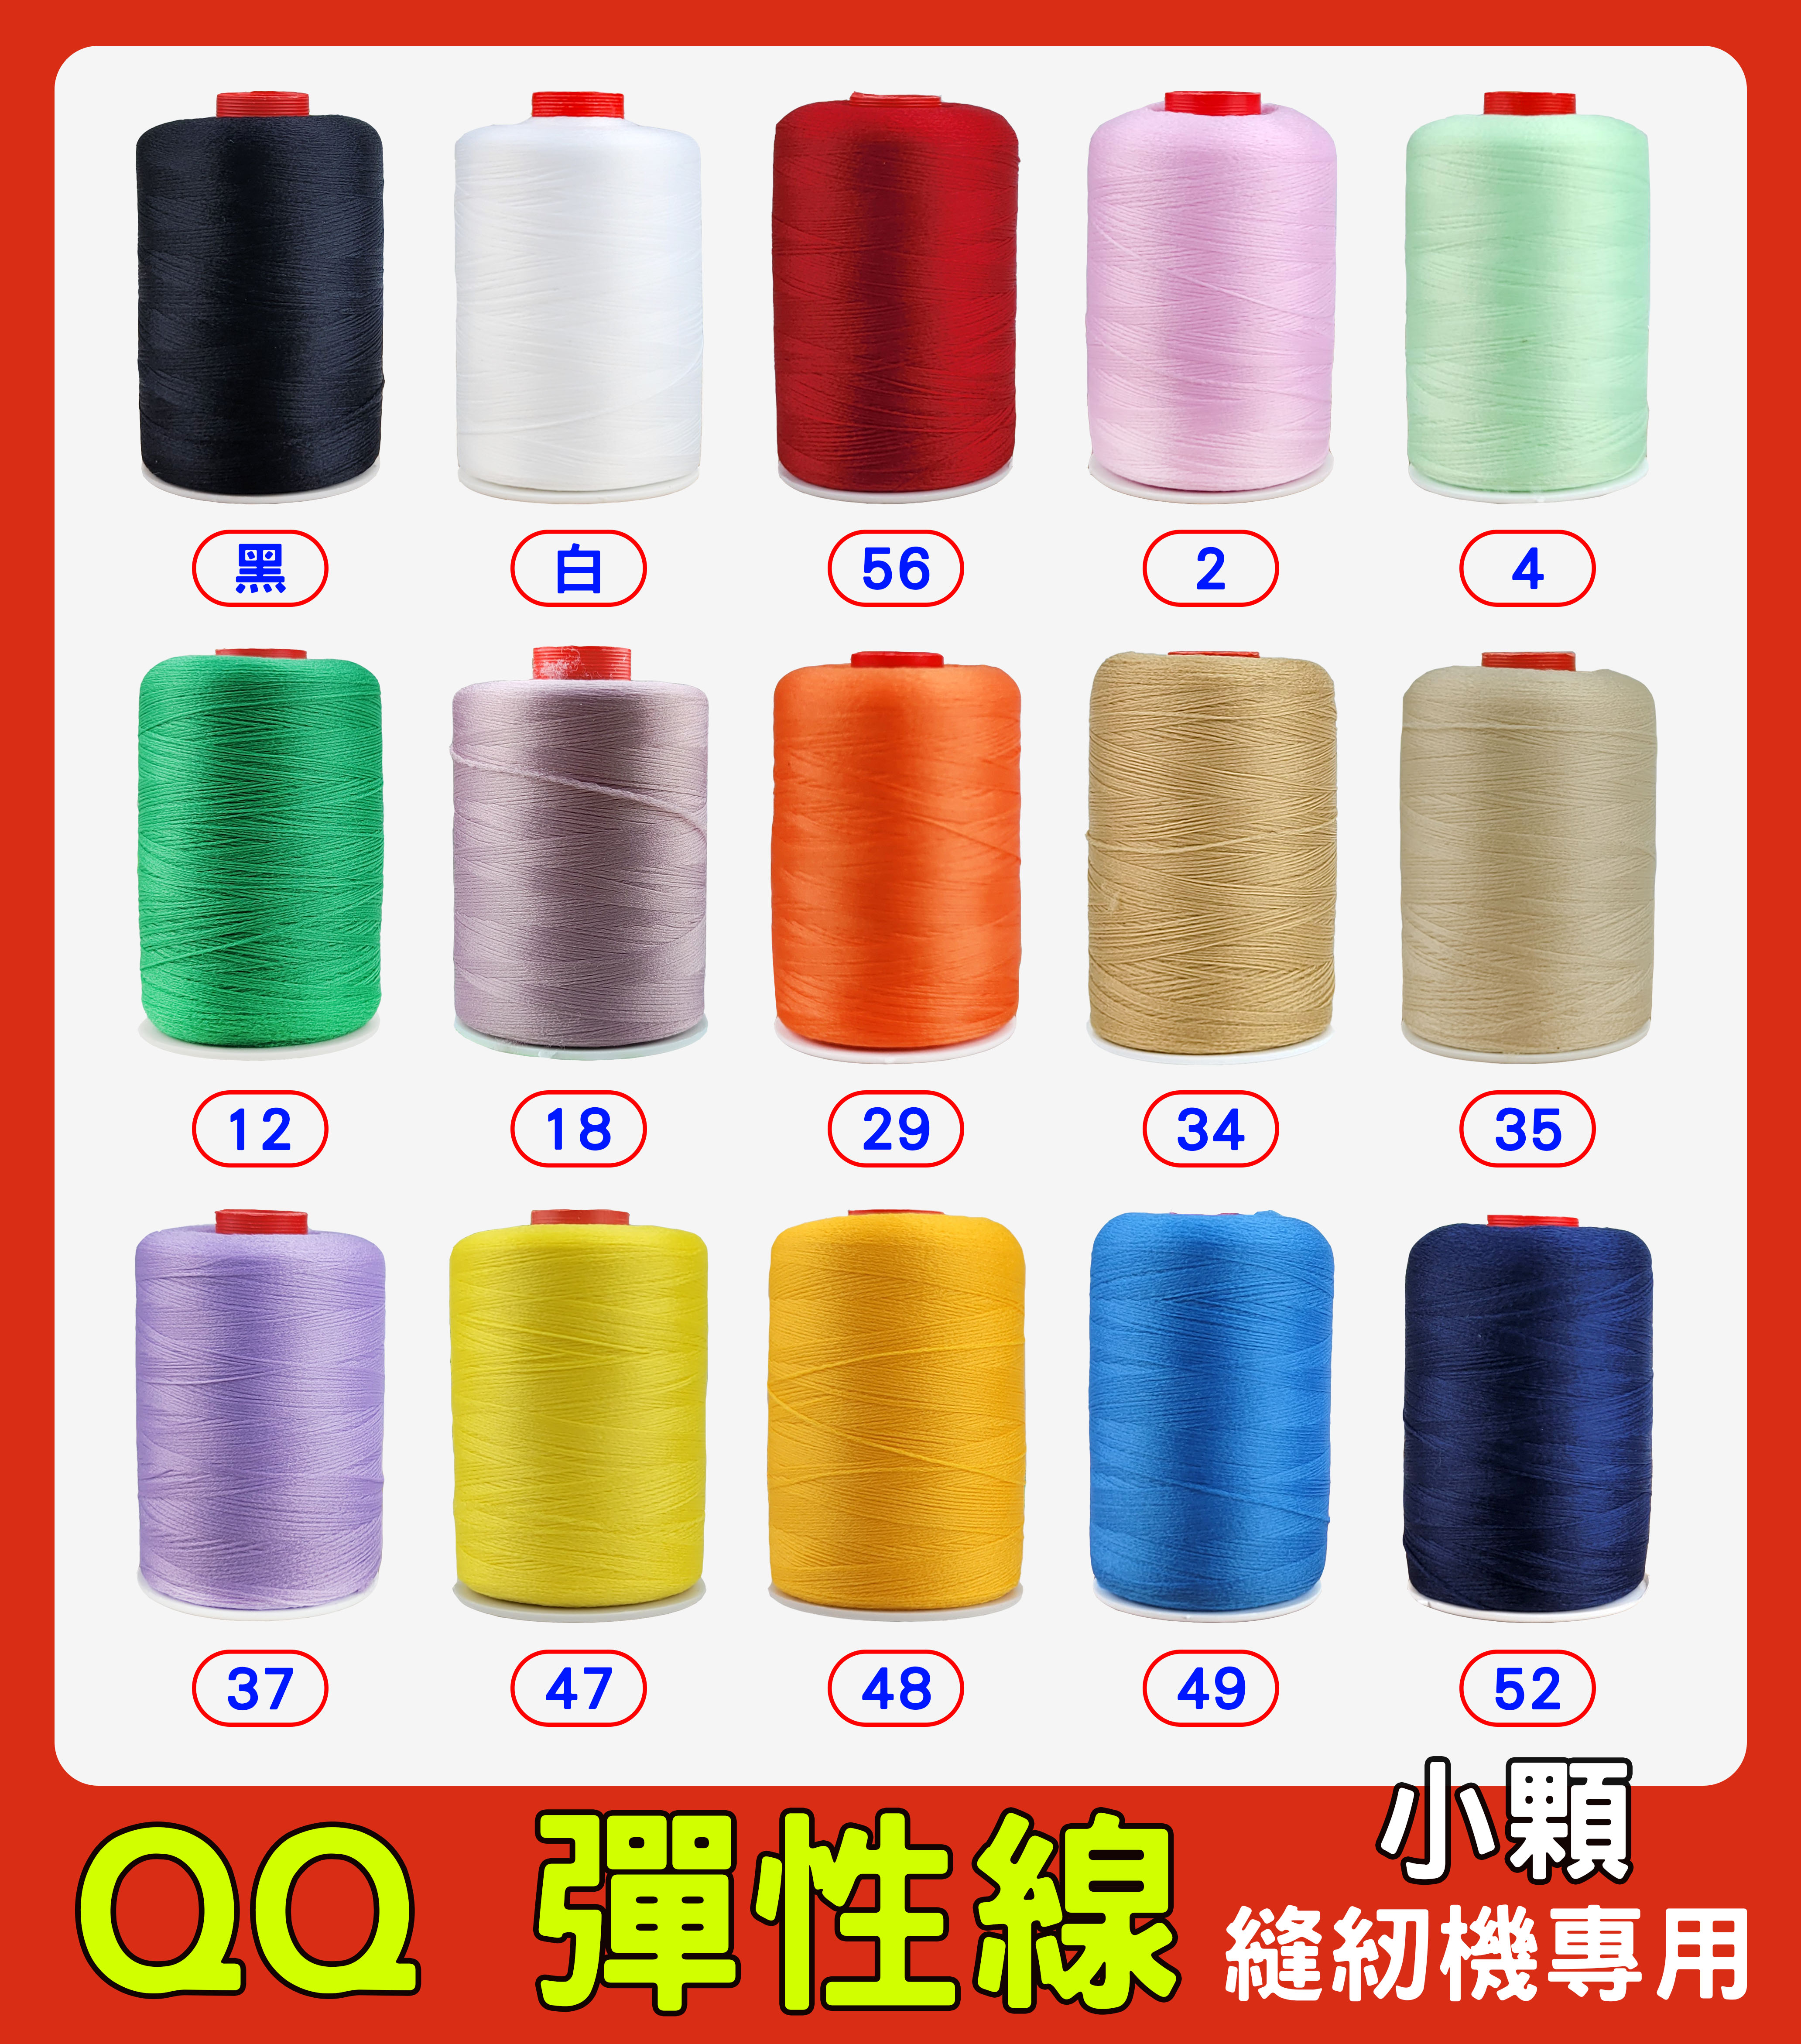 台灣製 QQ 彈性線 拷克伸縮彈性線 小顆裝 小型 QQ線 適合放置縫紉機上 針織布料、彈性布料